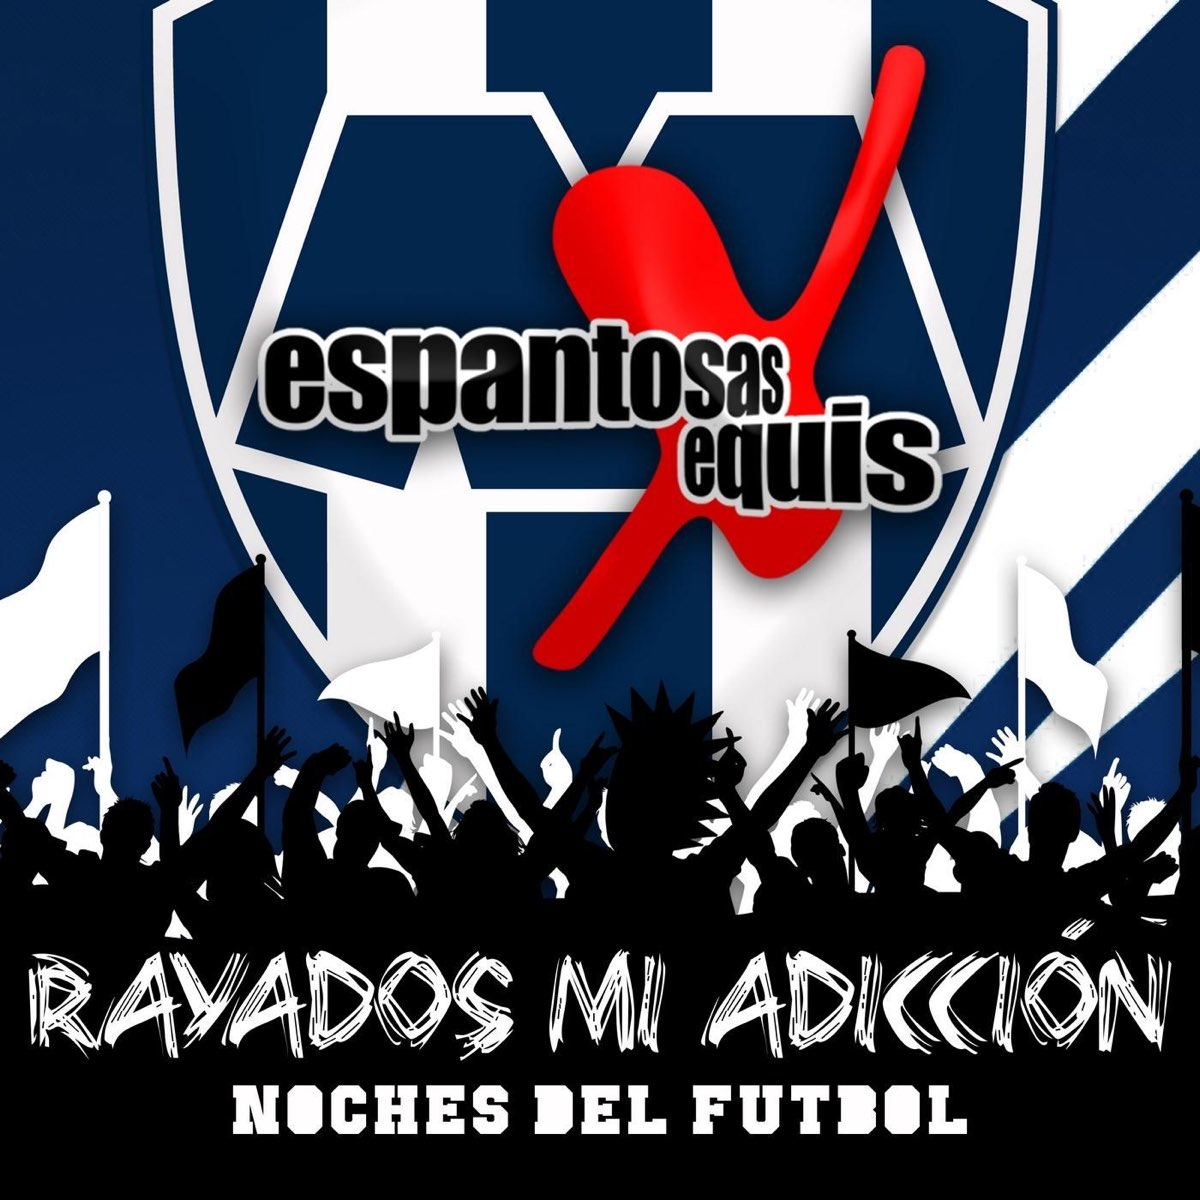 ‎Rayados Mi Adiccion Noches del Futbol by Espantosas Equis on Apple Music